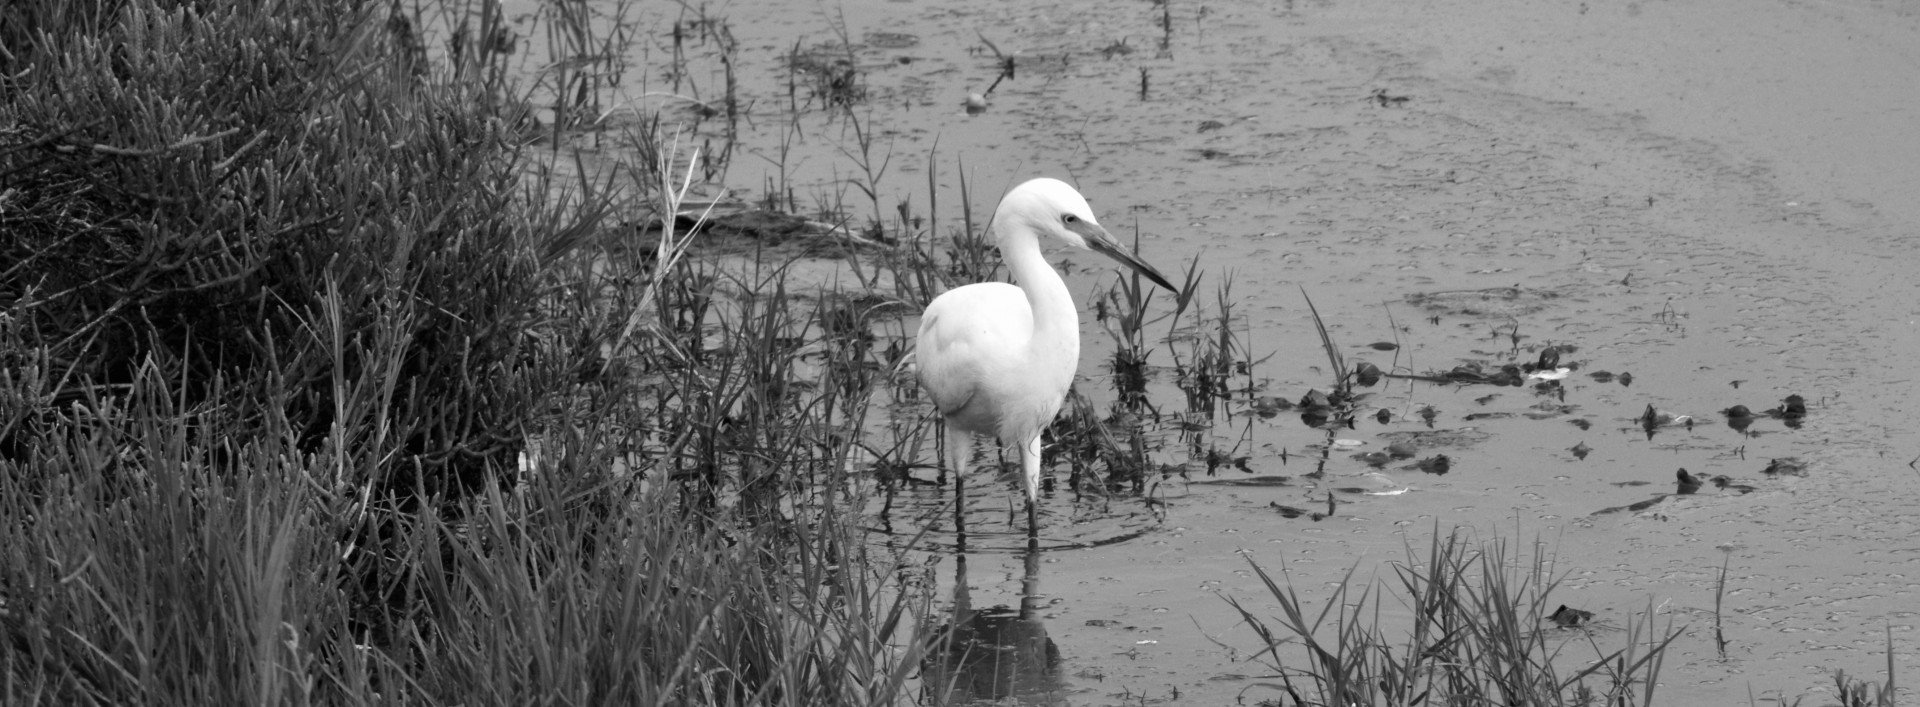 White Egret In The Marsh #2